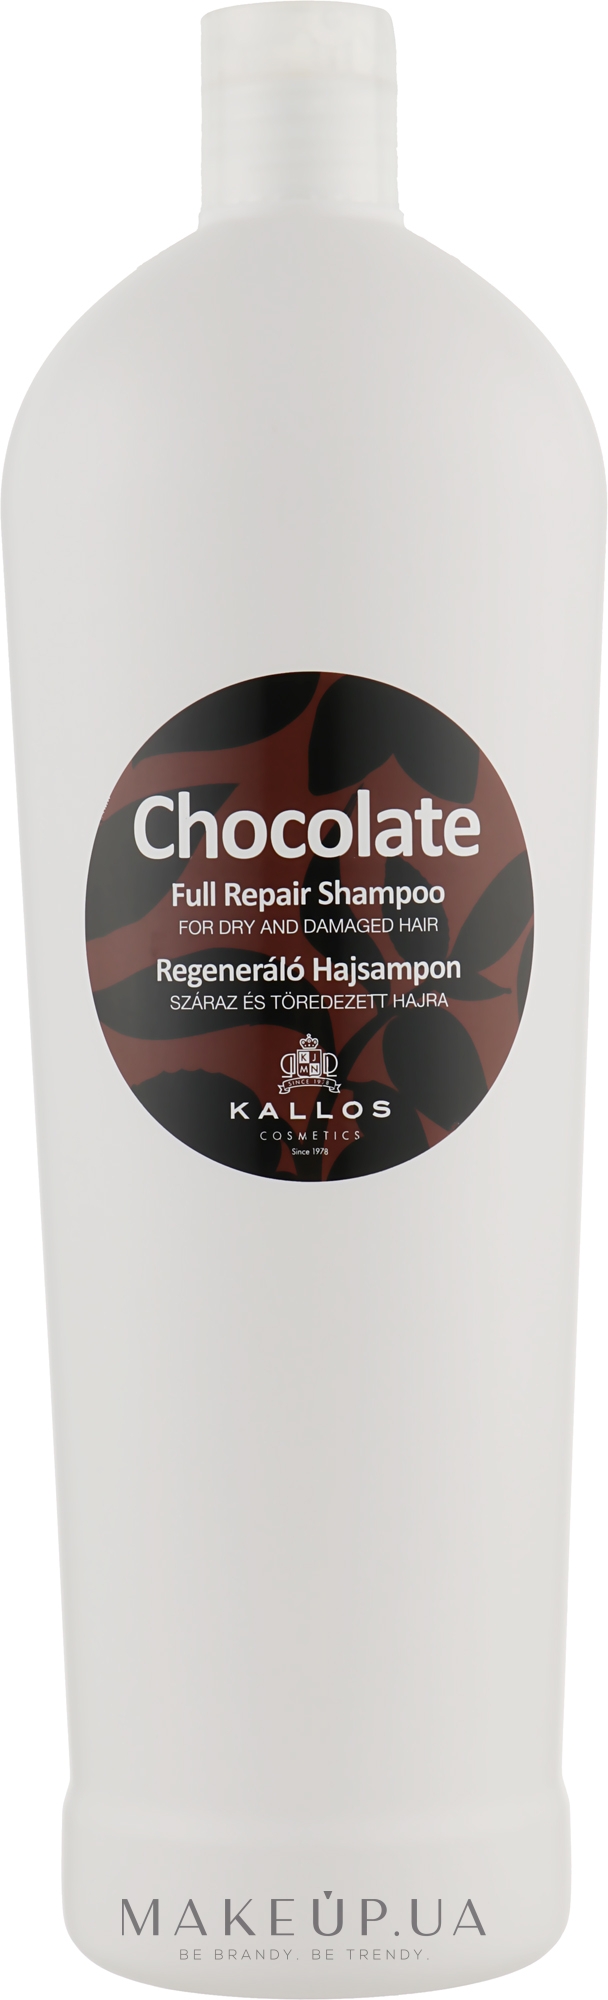 Шампунь для сухих и поврежденных волос "Шоколад" - Kallos Cosmetics Chocolate Full Repair Shampoo — фото 1000ml